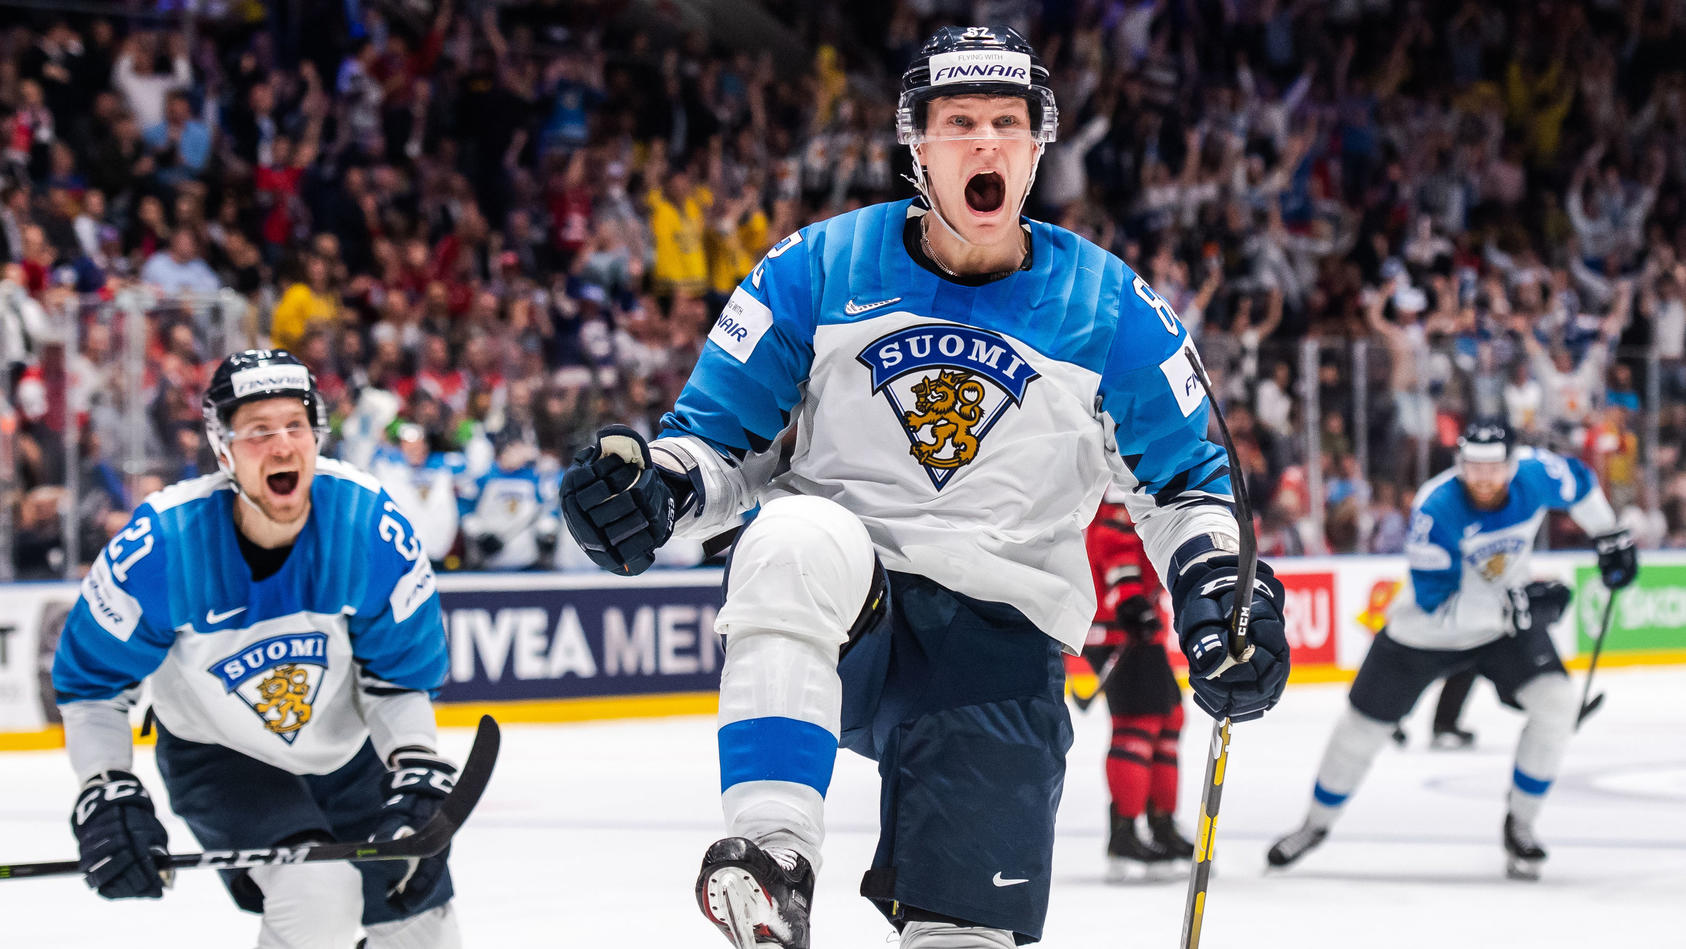 Finnland krönt sich gegen Kanada sensationell zum Eishockey-Weltmeister